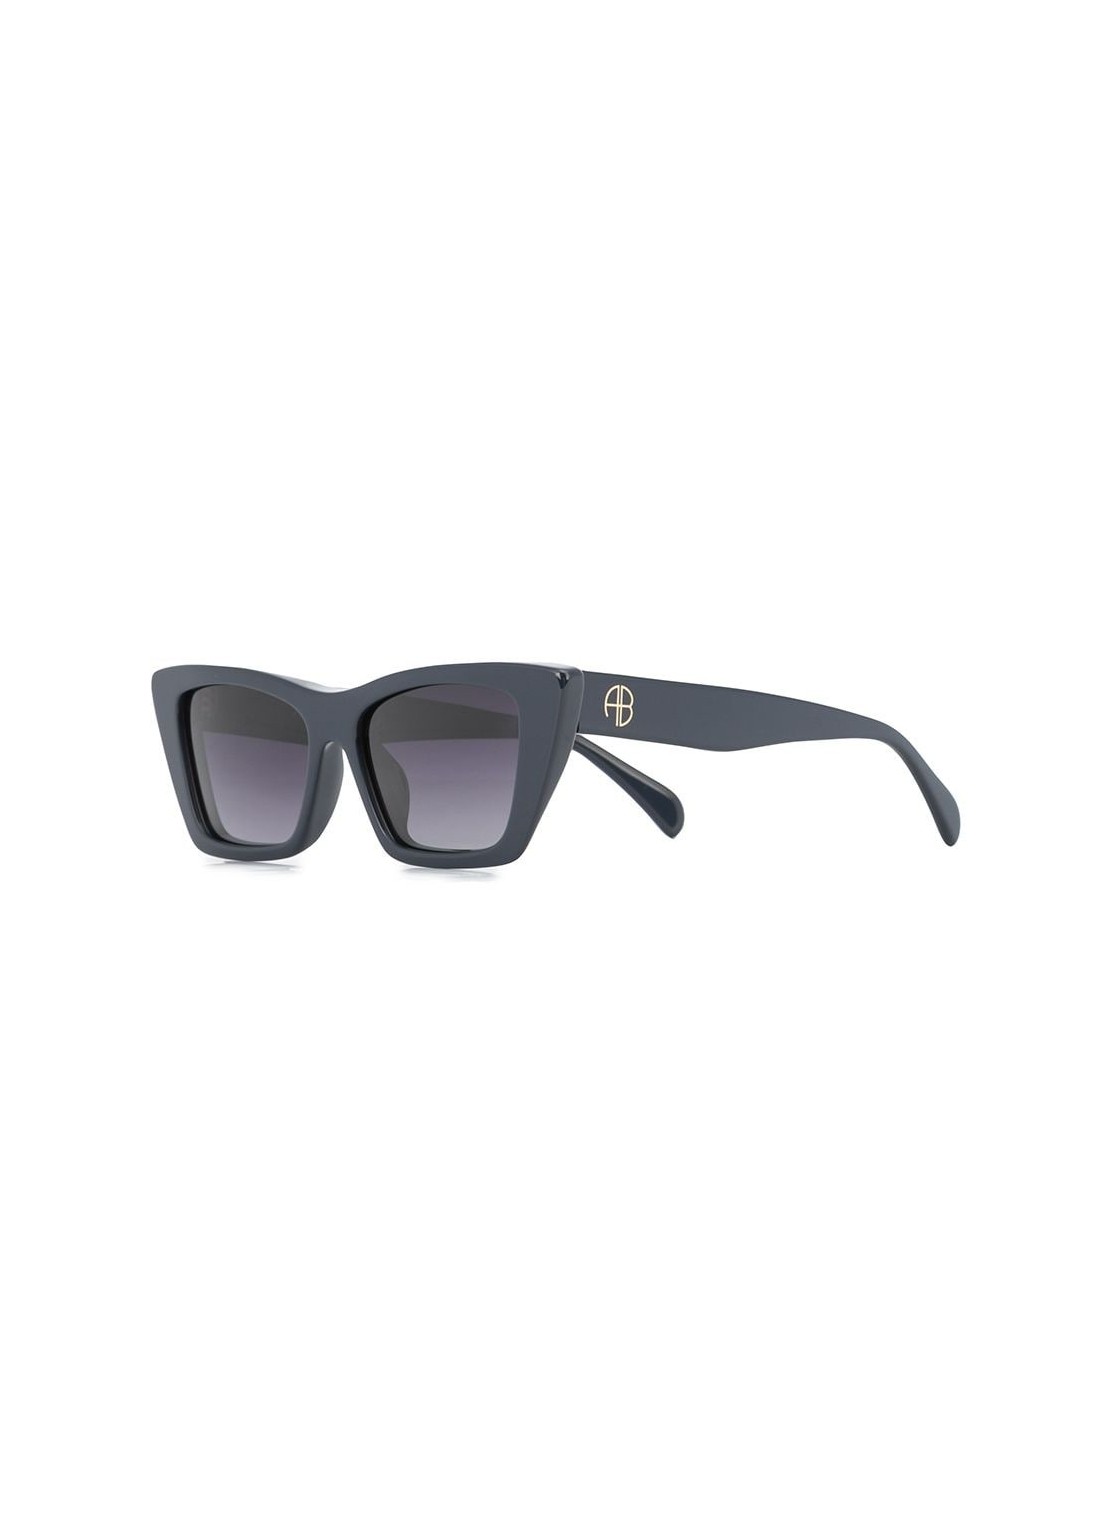 Gafas anine bing sunglasses woman levi sunglasses a120025420 navy talla T/U
 